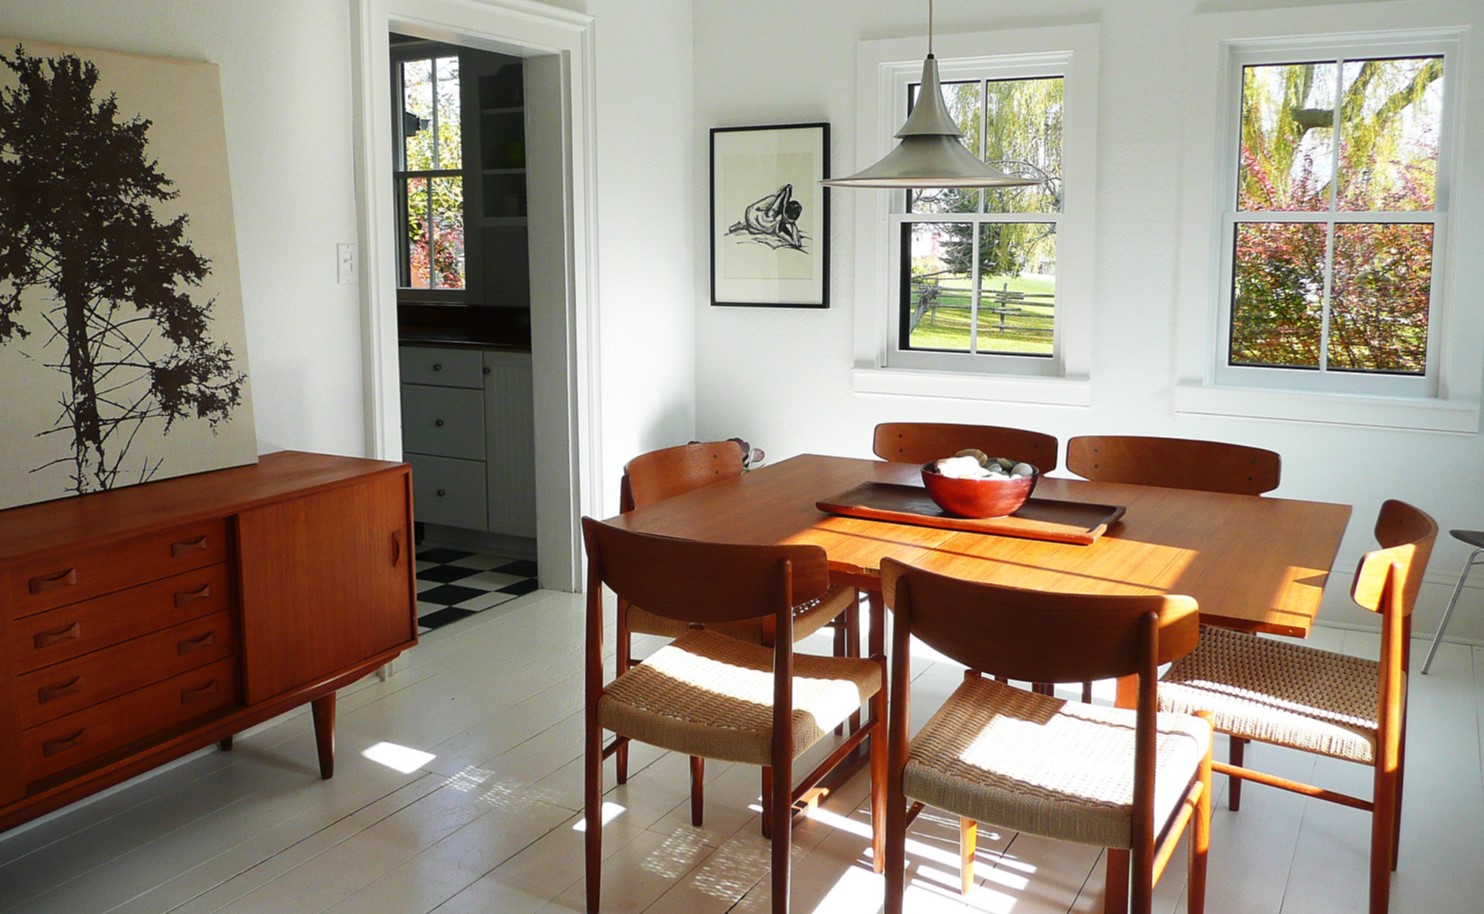 Деревянная мебель в стиле ретро прекрасно подходит под белую отделку столовой